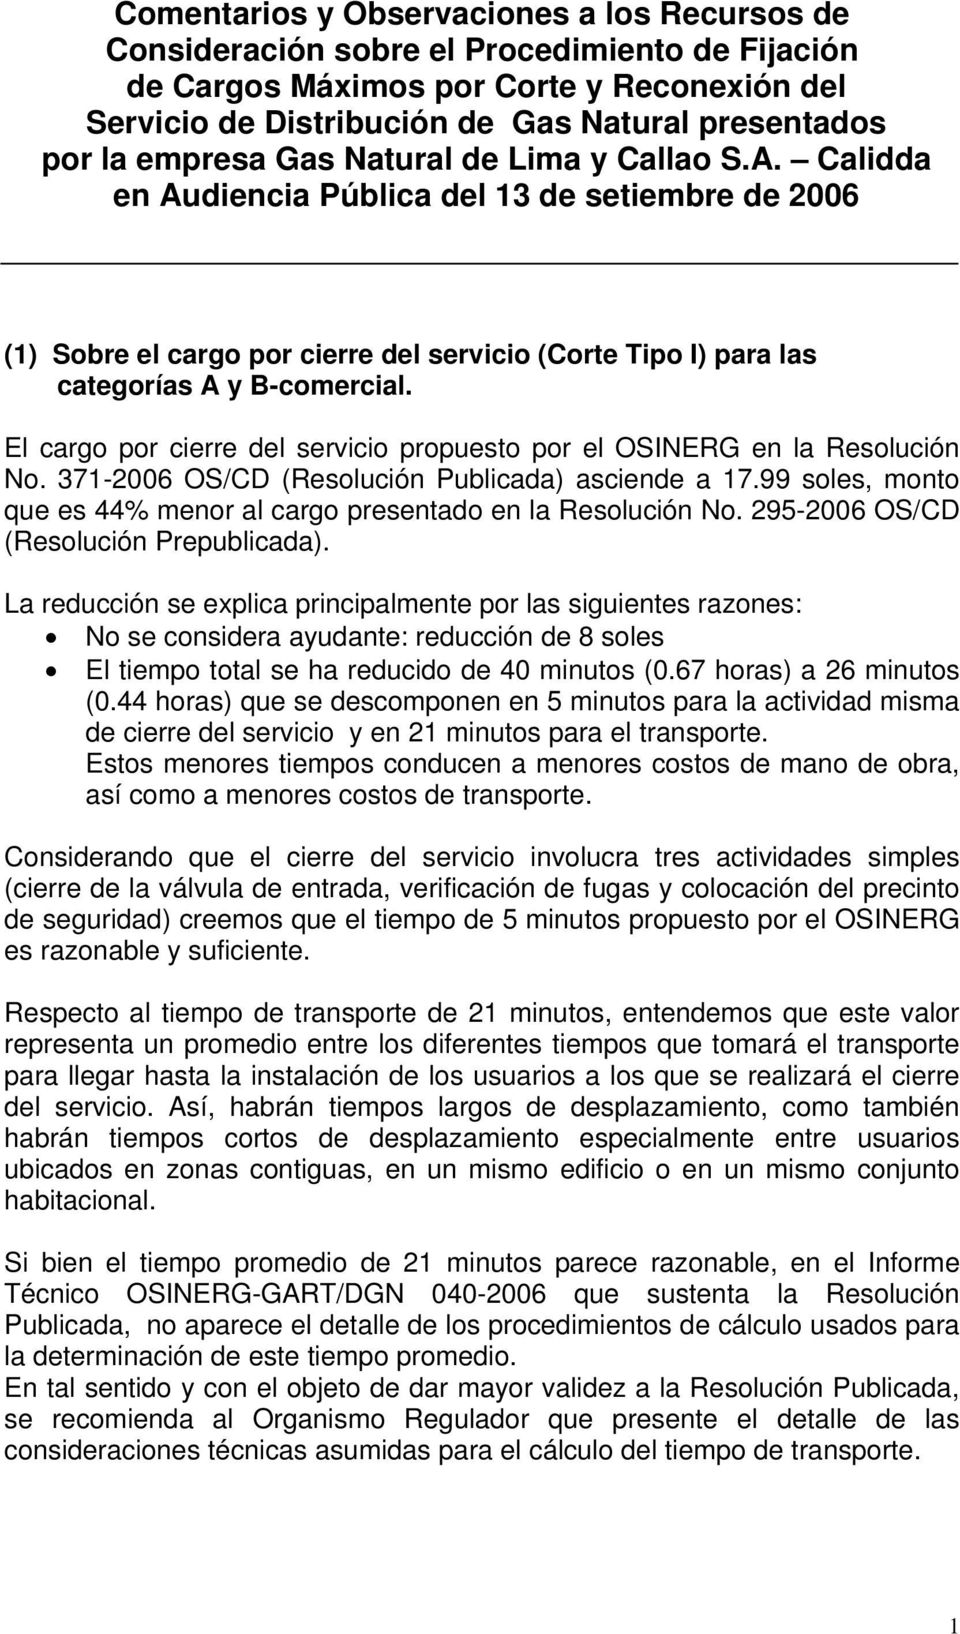 El cargo por cierre del servicio propuesto por el OSINERG en la Resolución No. 371-2006 OS/CD (Resolución Publicada) asciende a 17.